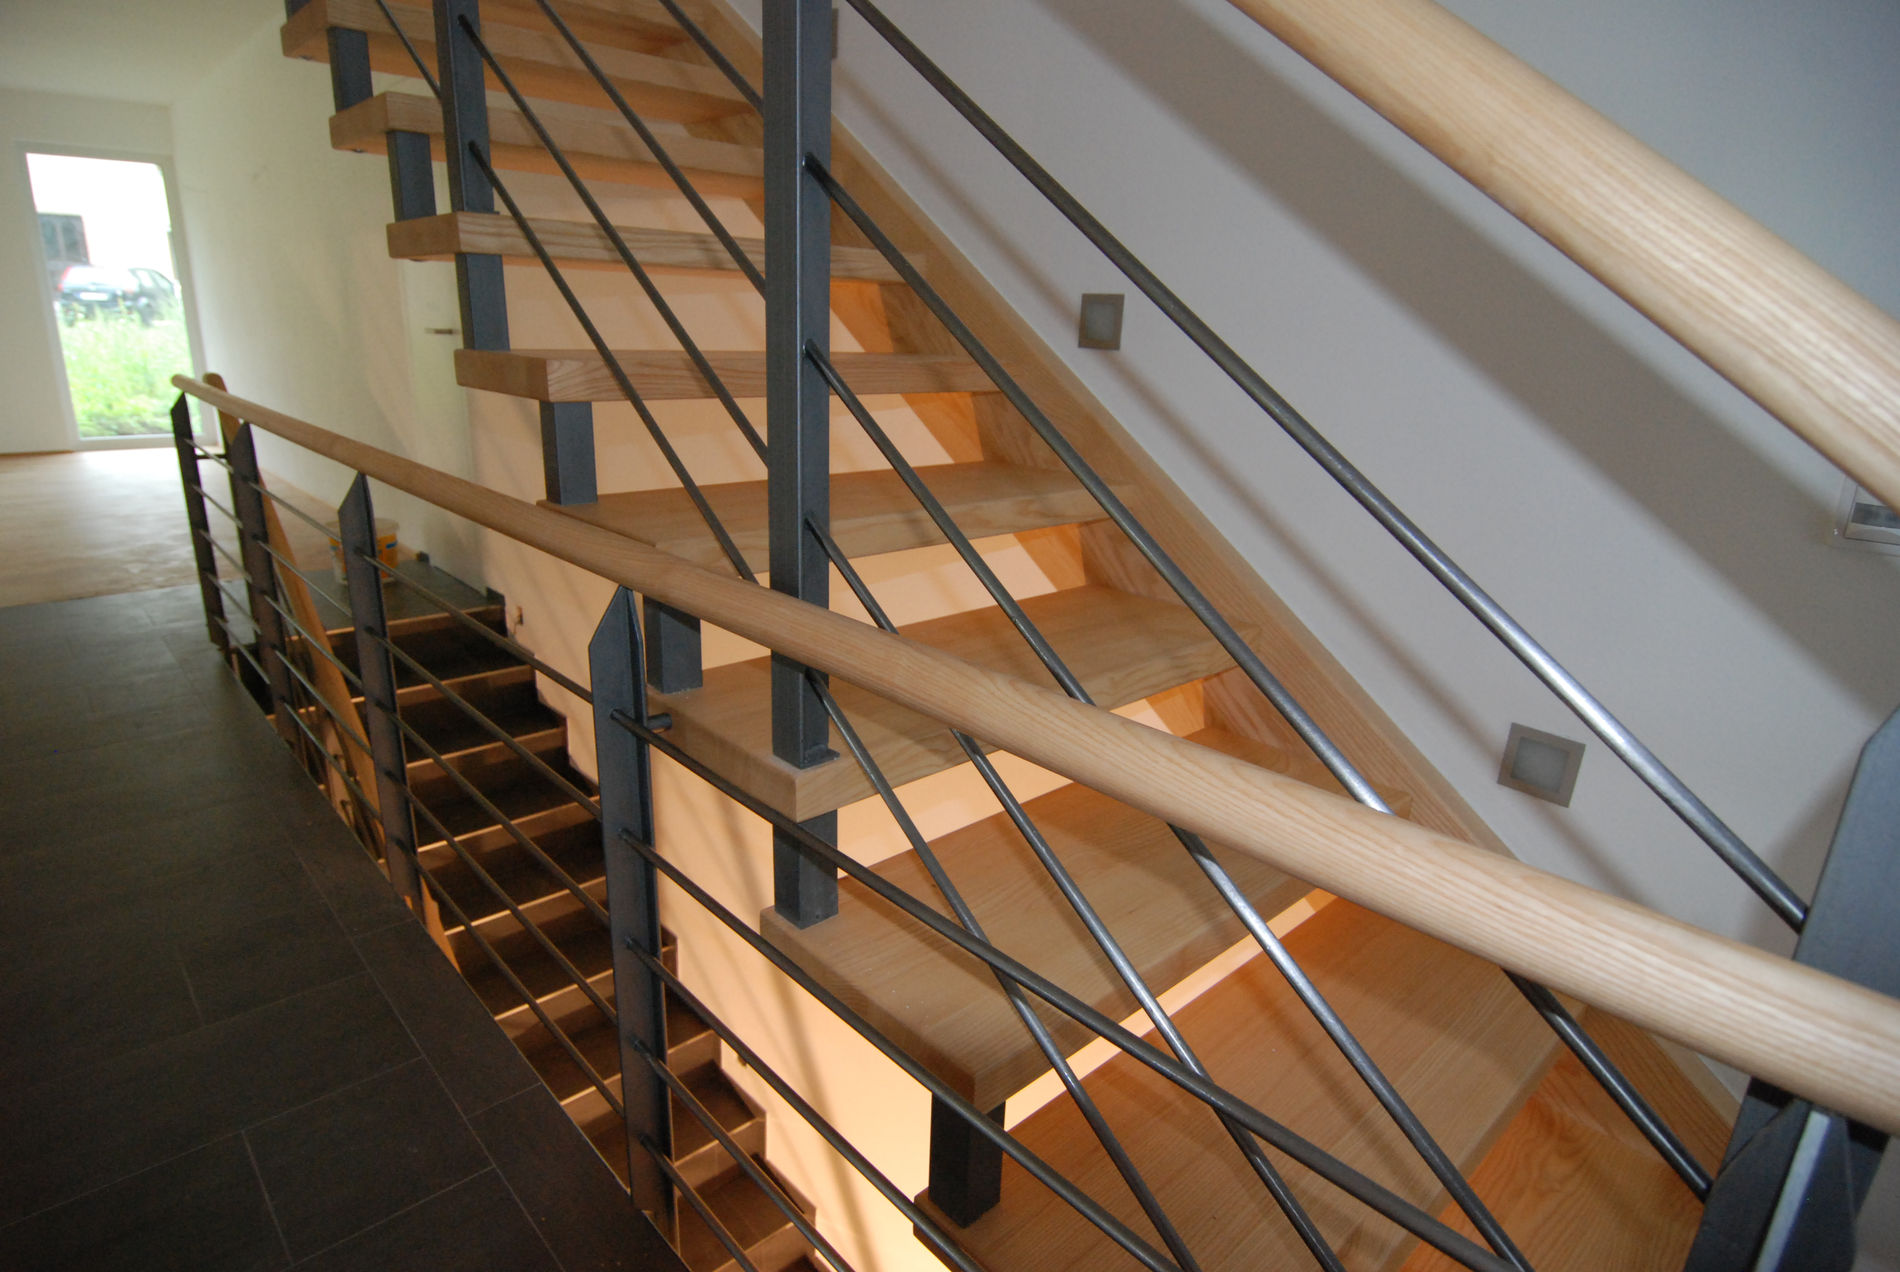 Moderne Holztreppe mit Edelstahlgeländer und Seilgeländer in einem hellen Treppenhaus, Sicht von oben auf die Stufen.